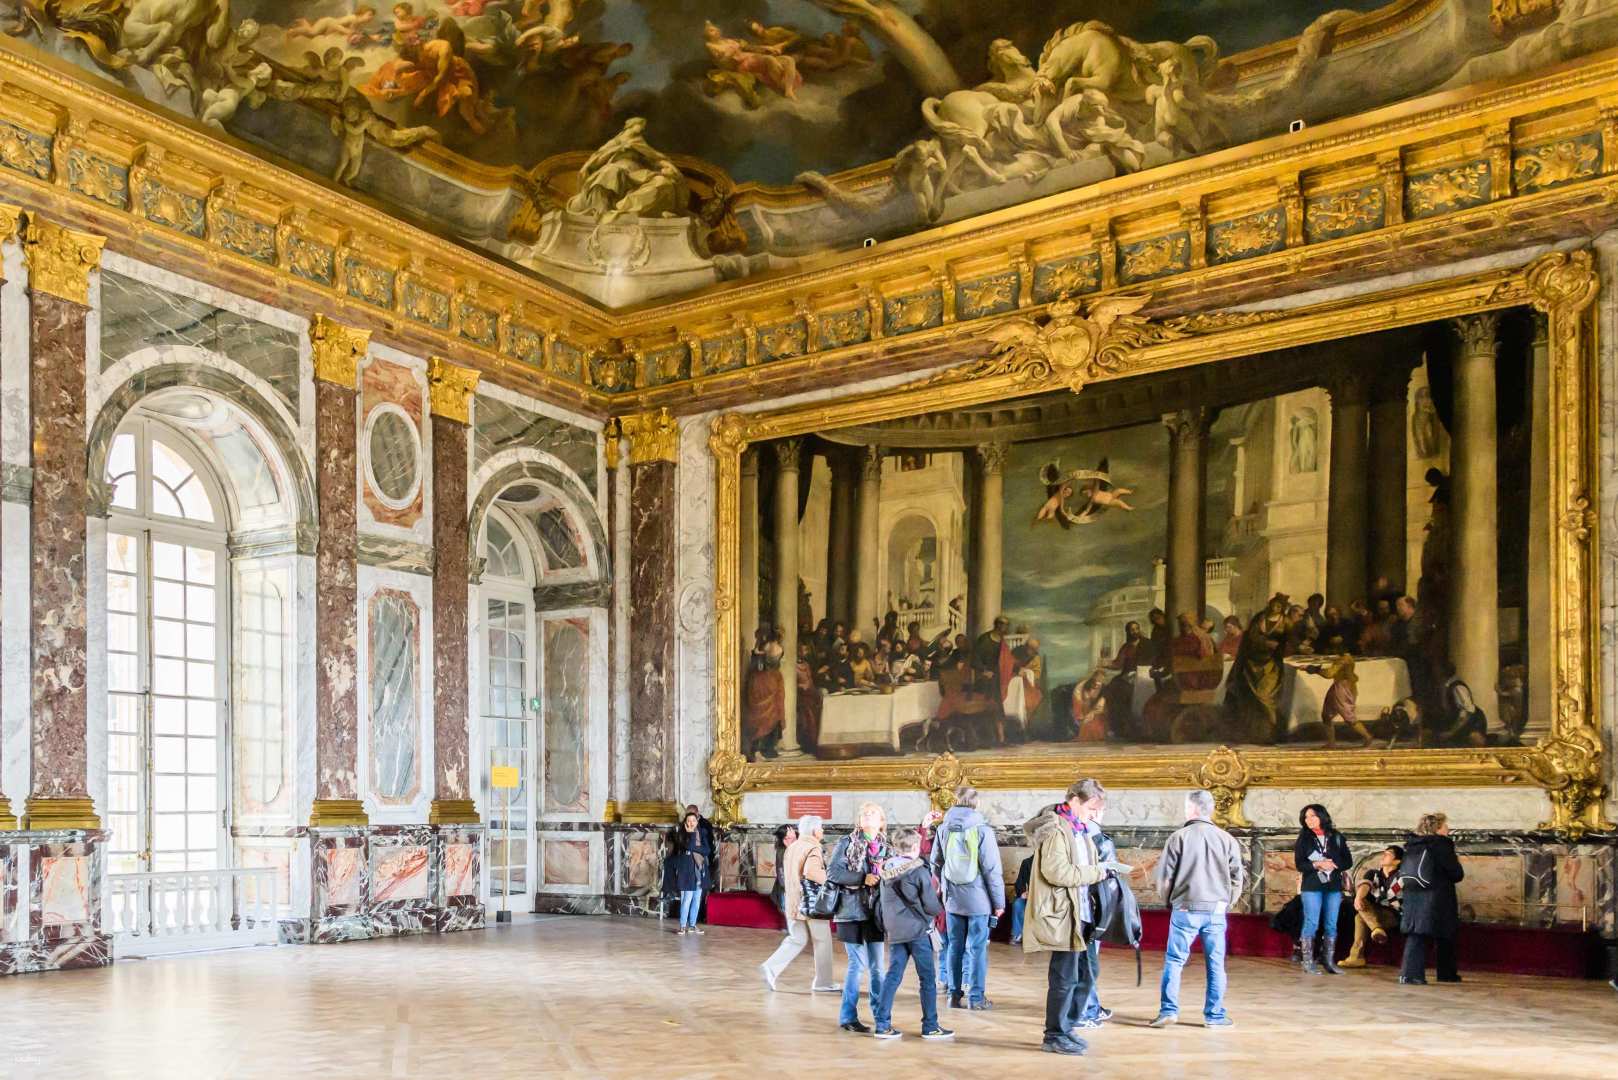 法國-巴黎凡爾賽宮 Palace of Versailles 通票| 導遊導覽